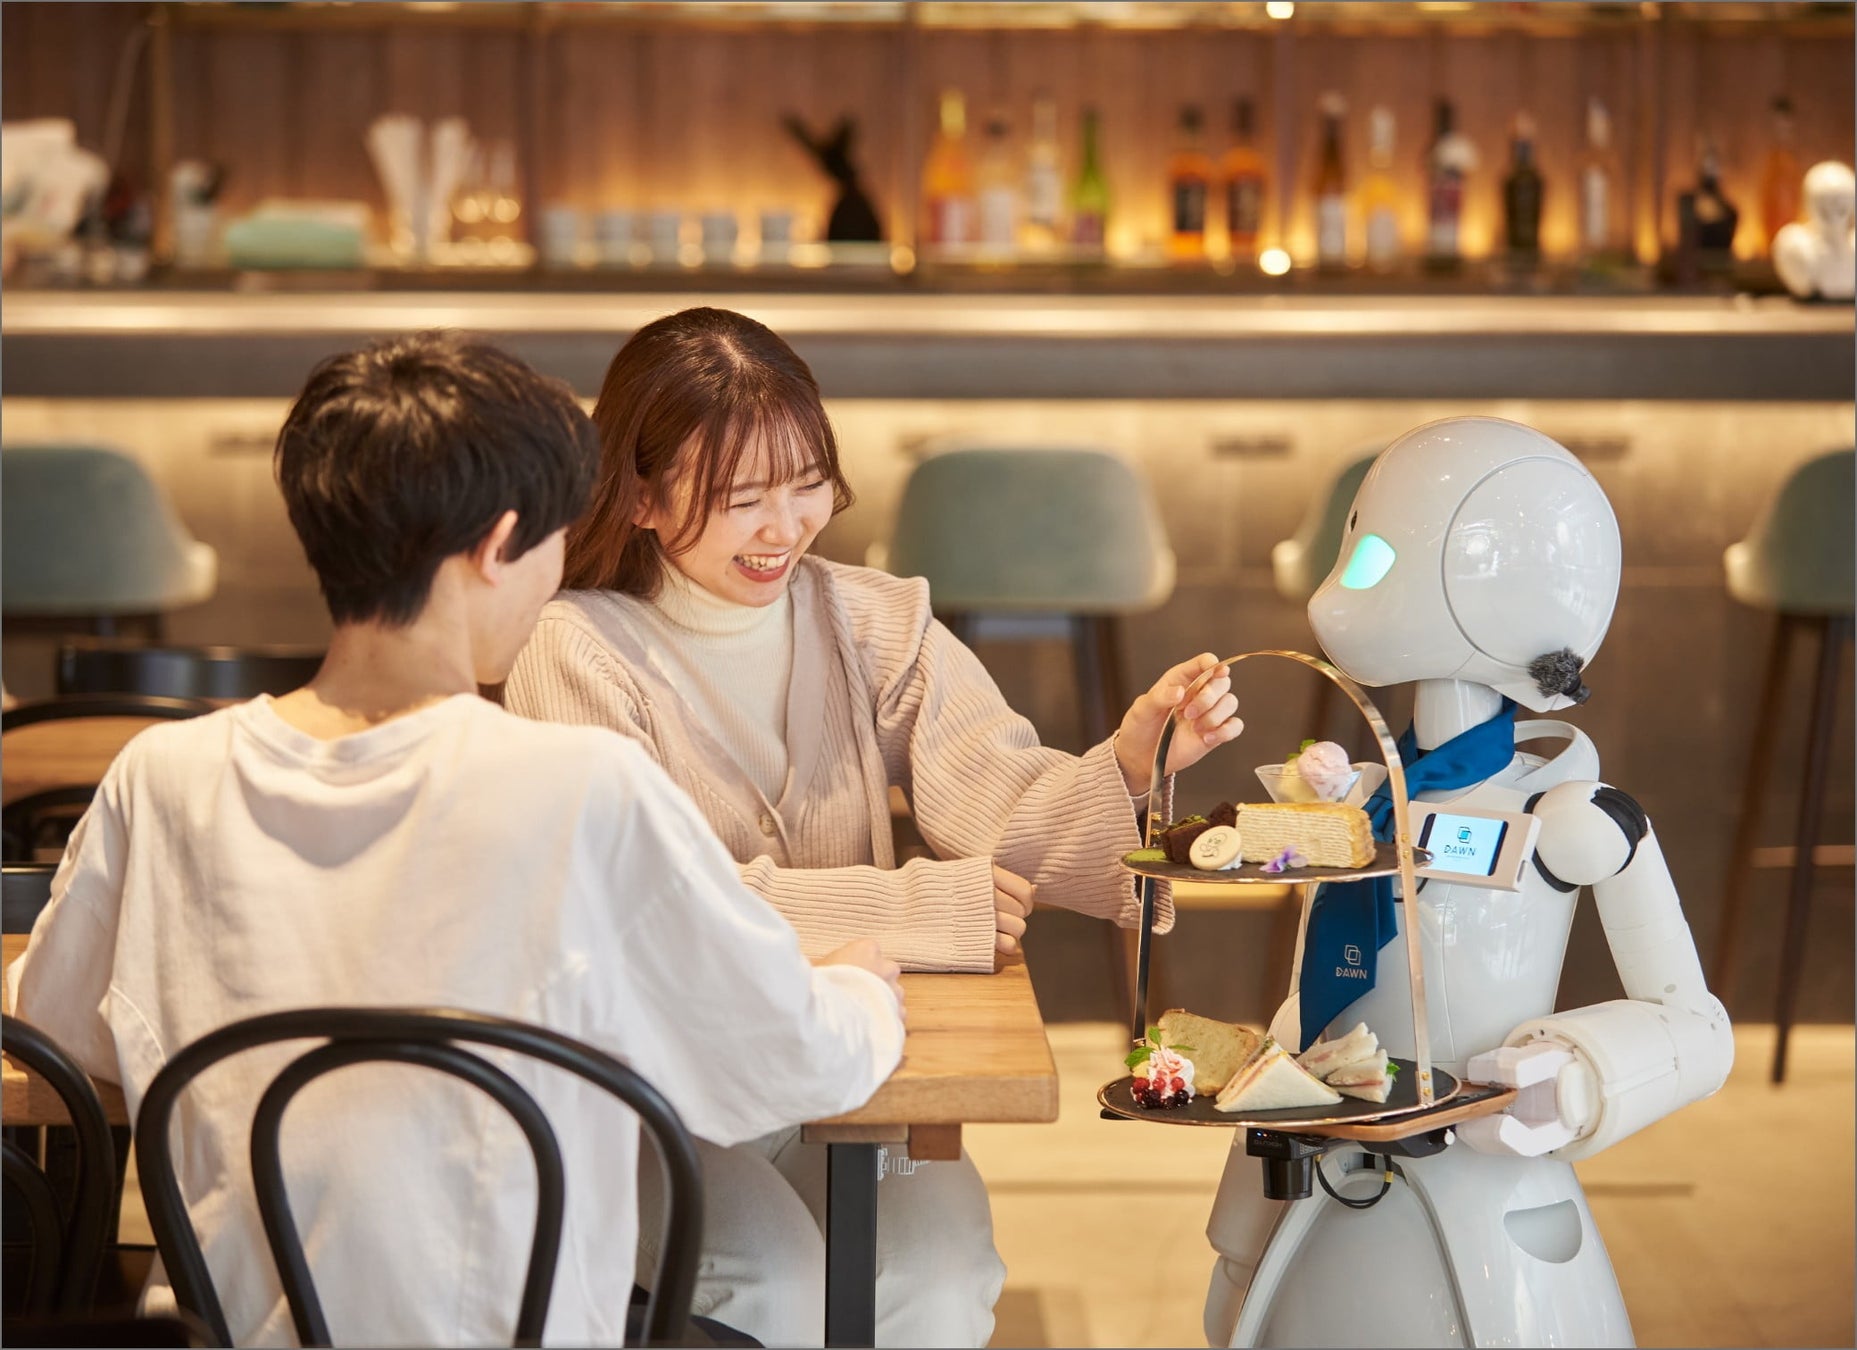 「分身ロボットカフェ」、カフェと新たな働き方を開発する公開実験店を融合した体験型施設として5/1（土）よりリニューアルオープン！